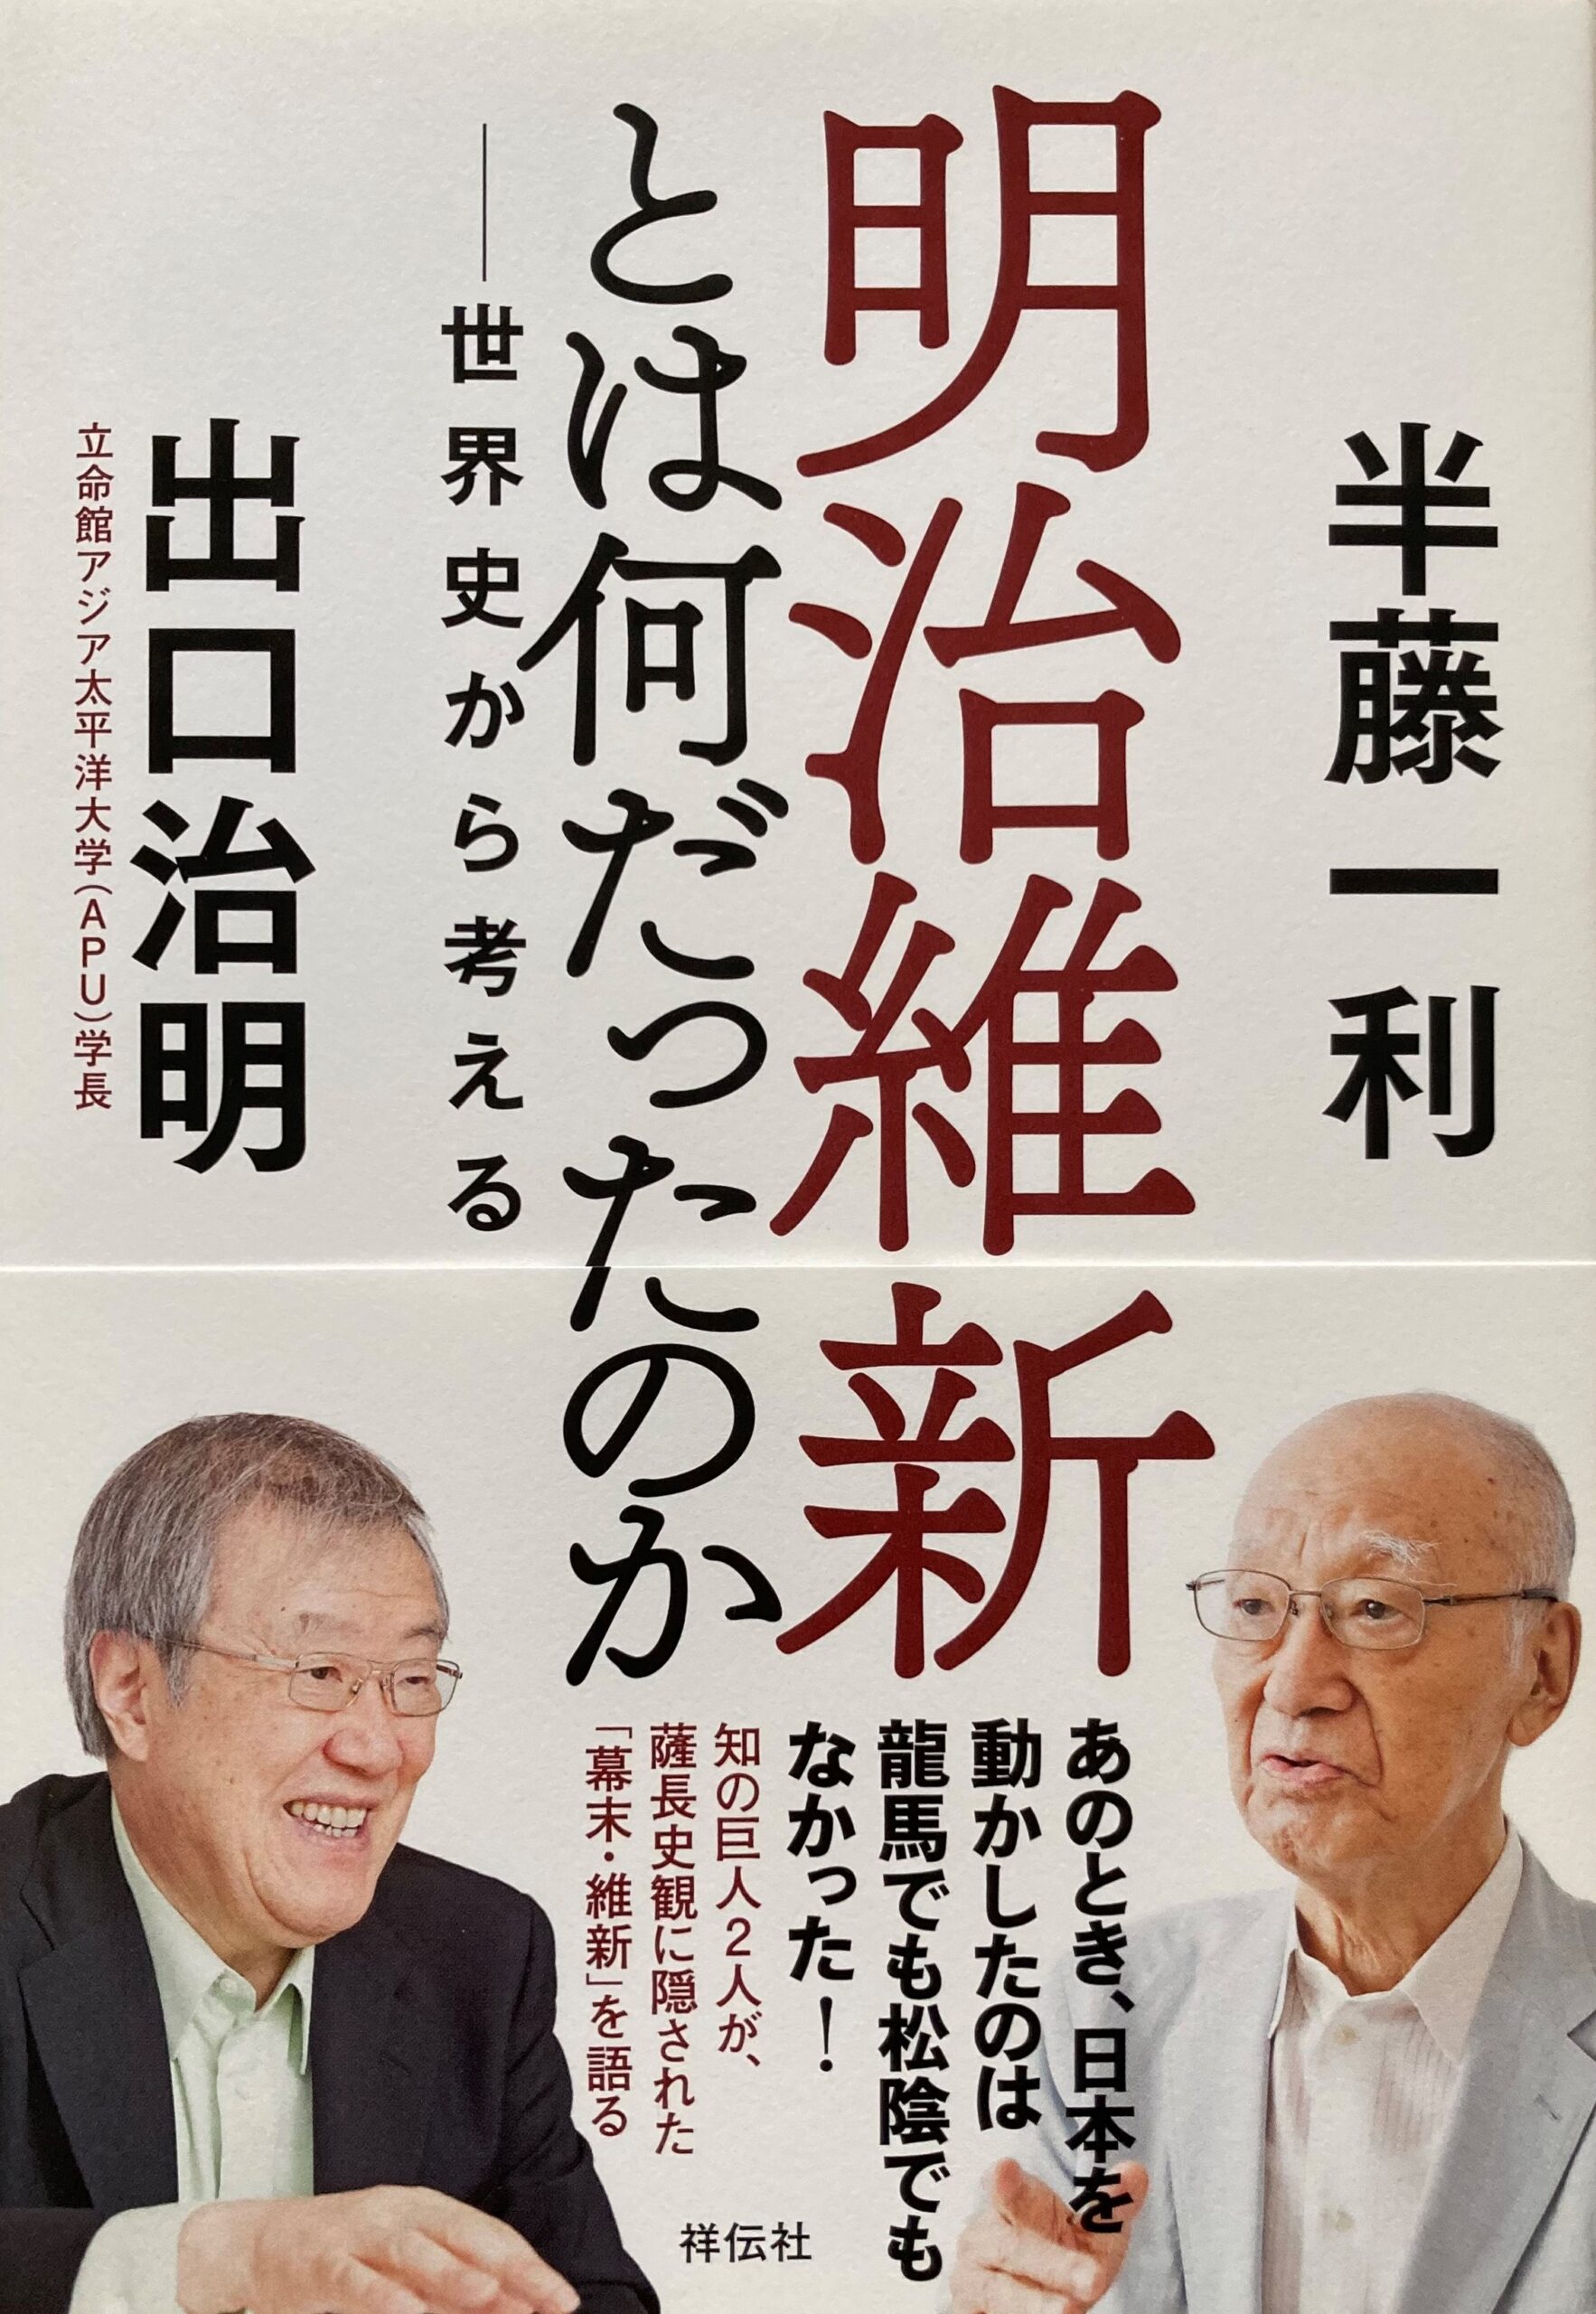 ブログで紹介した「明治維新とは何だったのか」の本の表紙の写真。半藤さんと出口さん二人の顔写真。